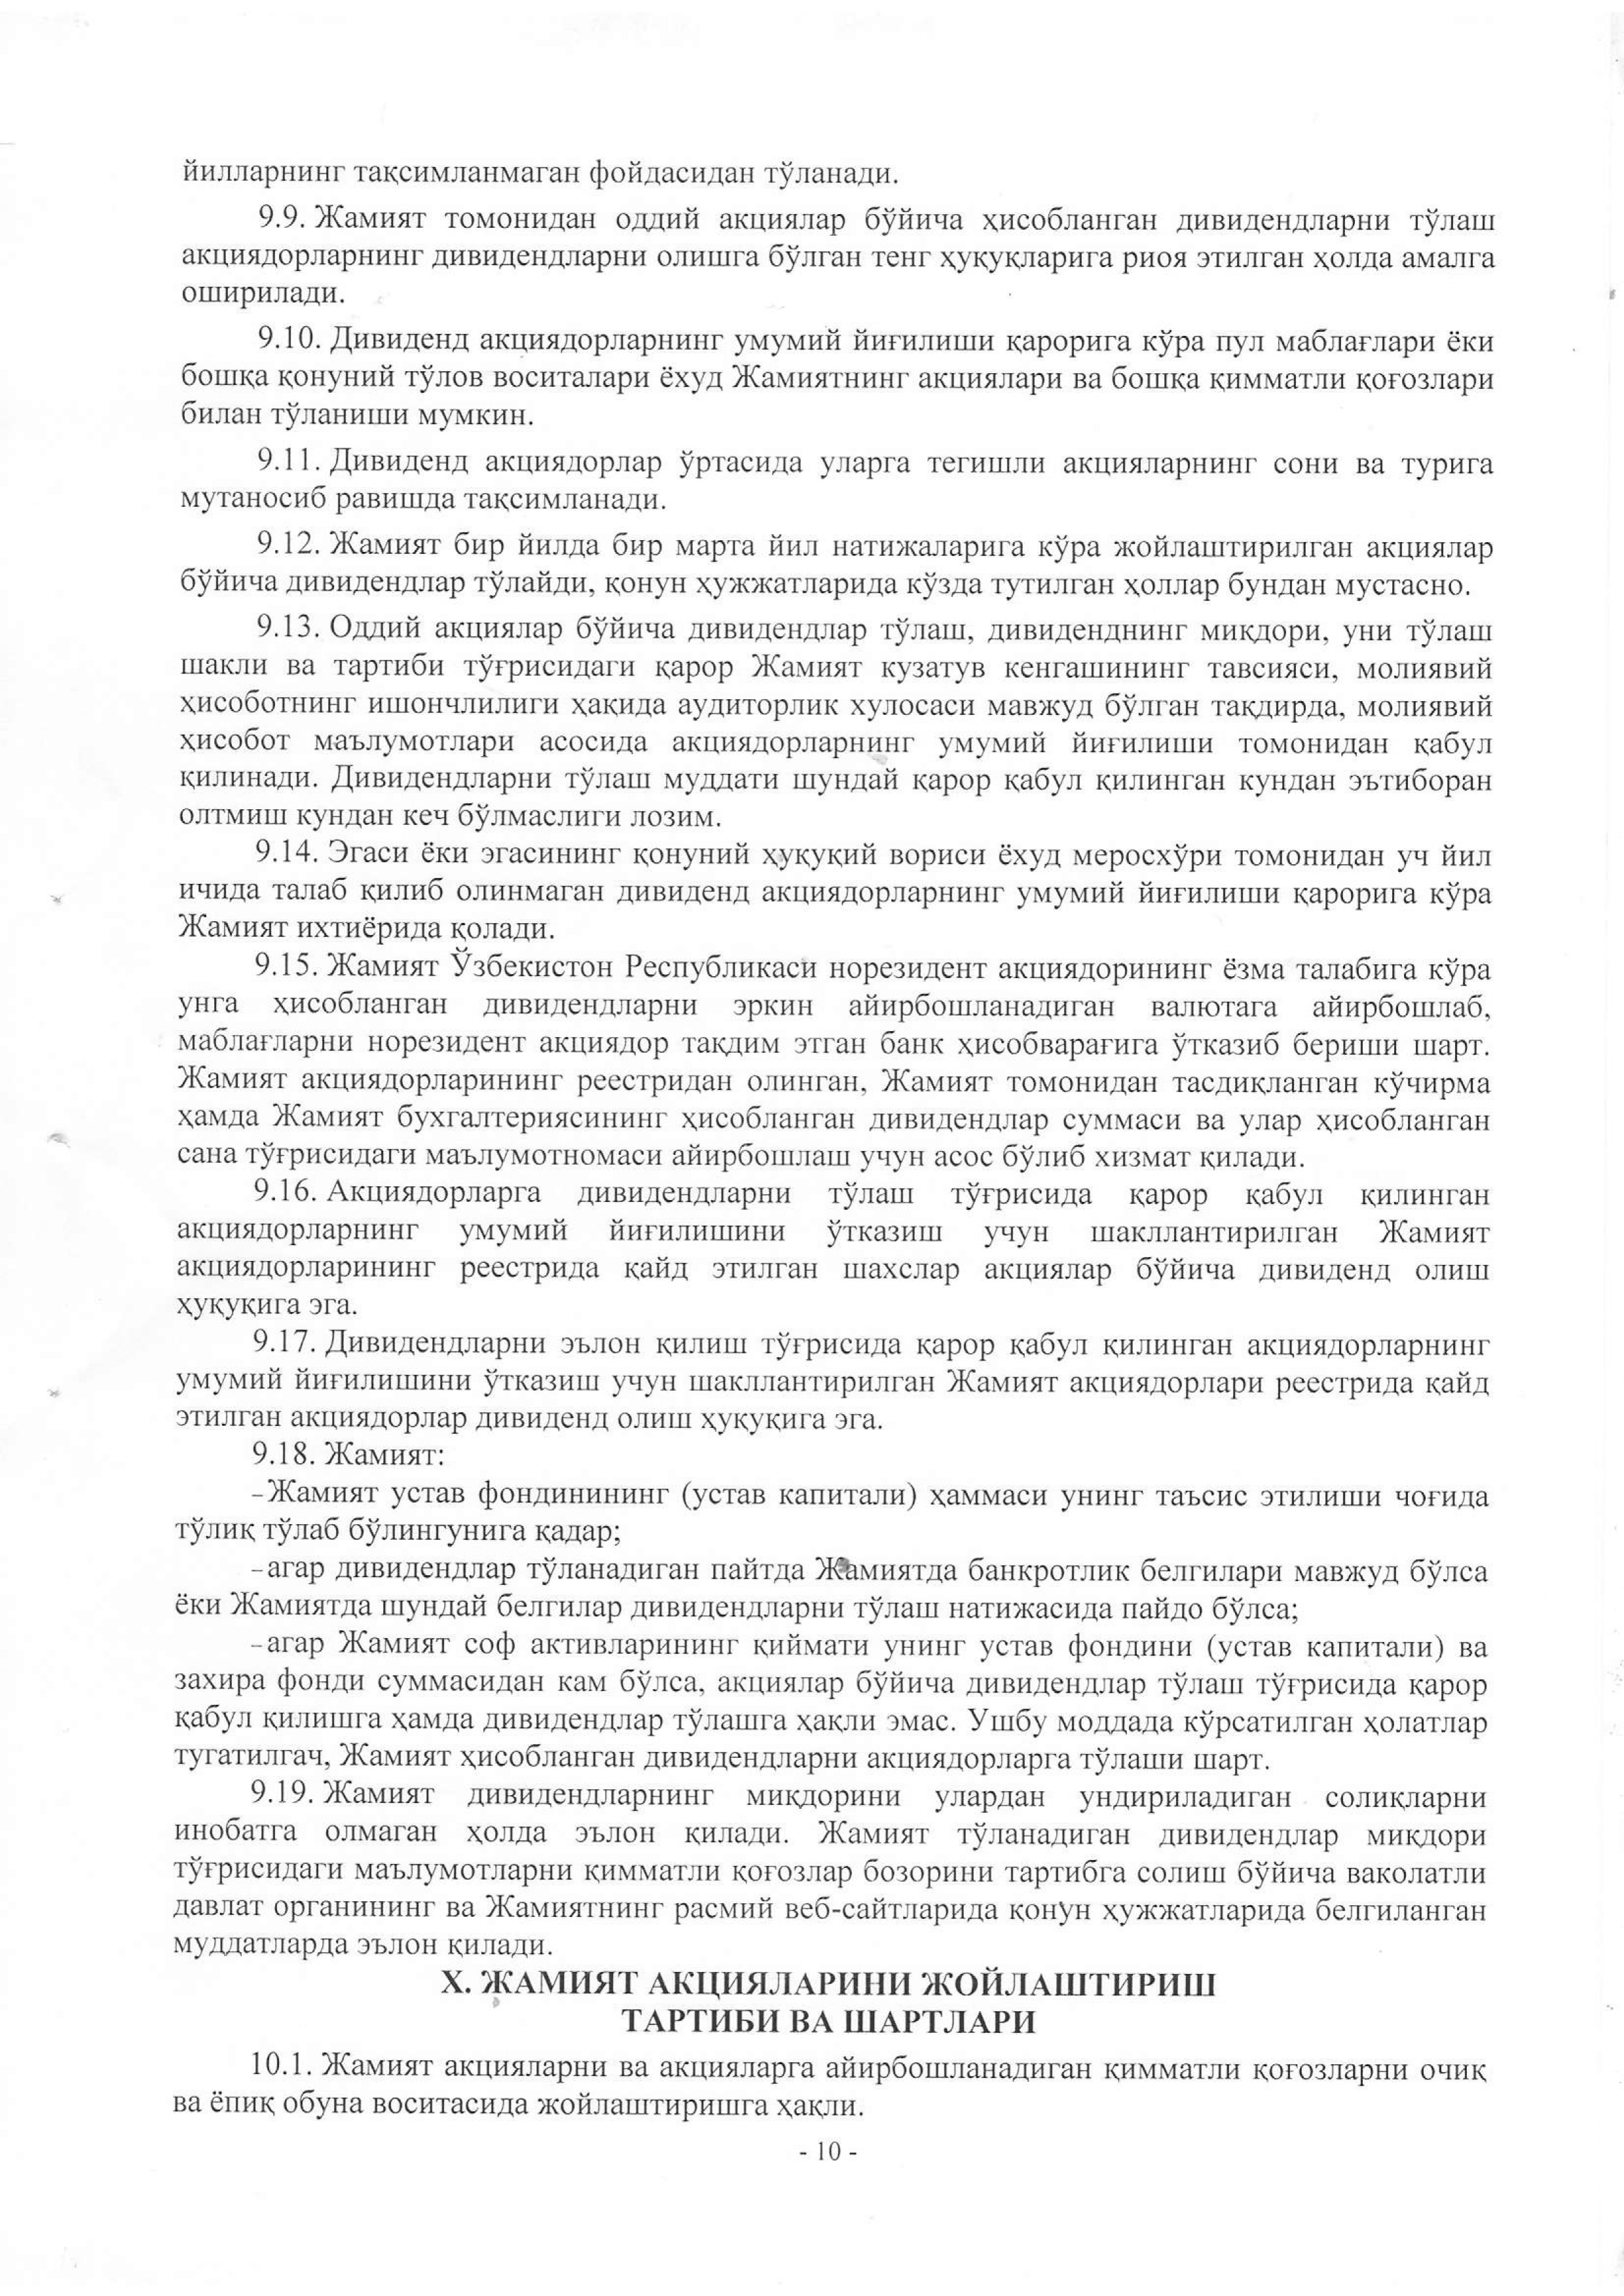 устав 2019 жахон бозори-10